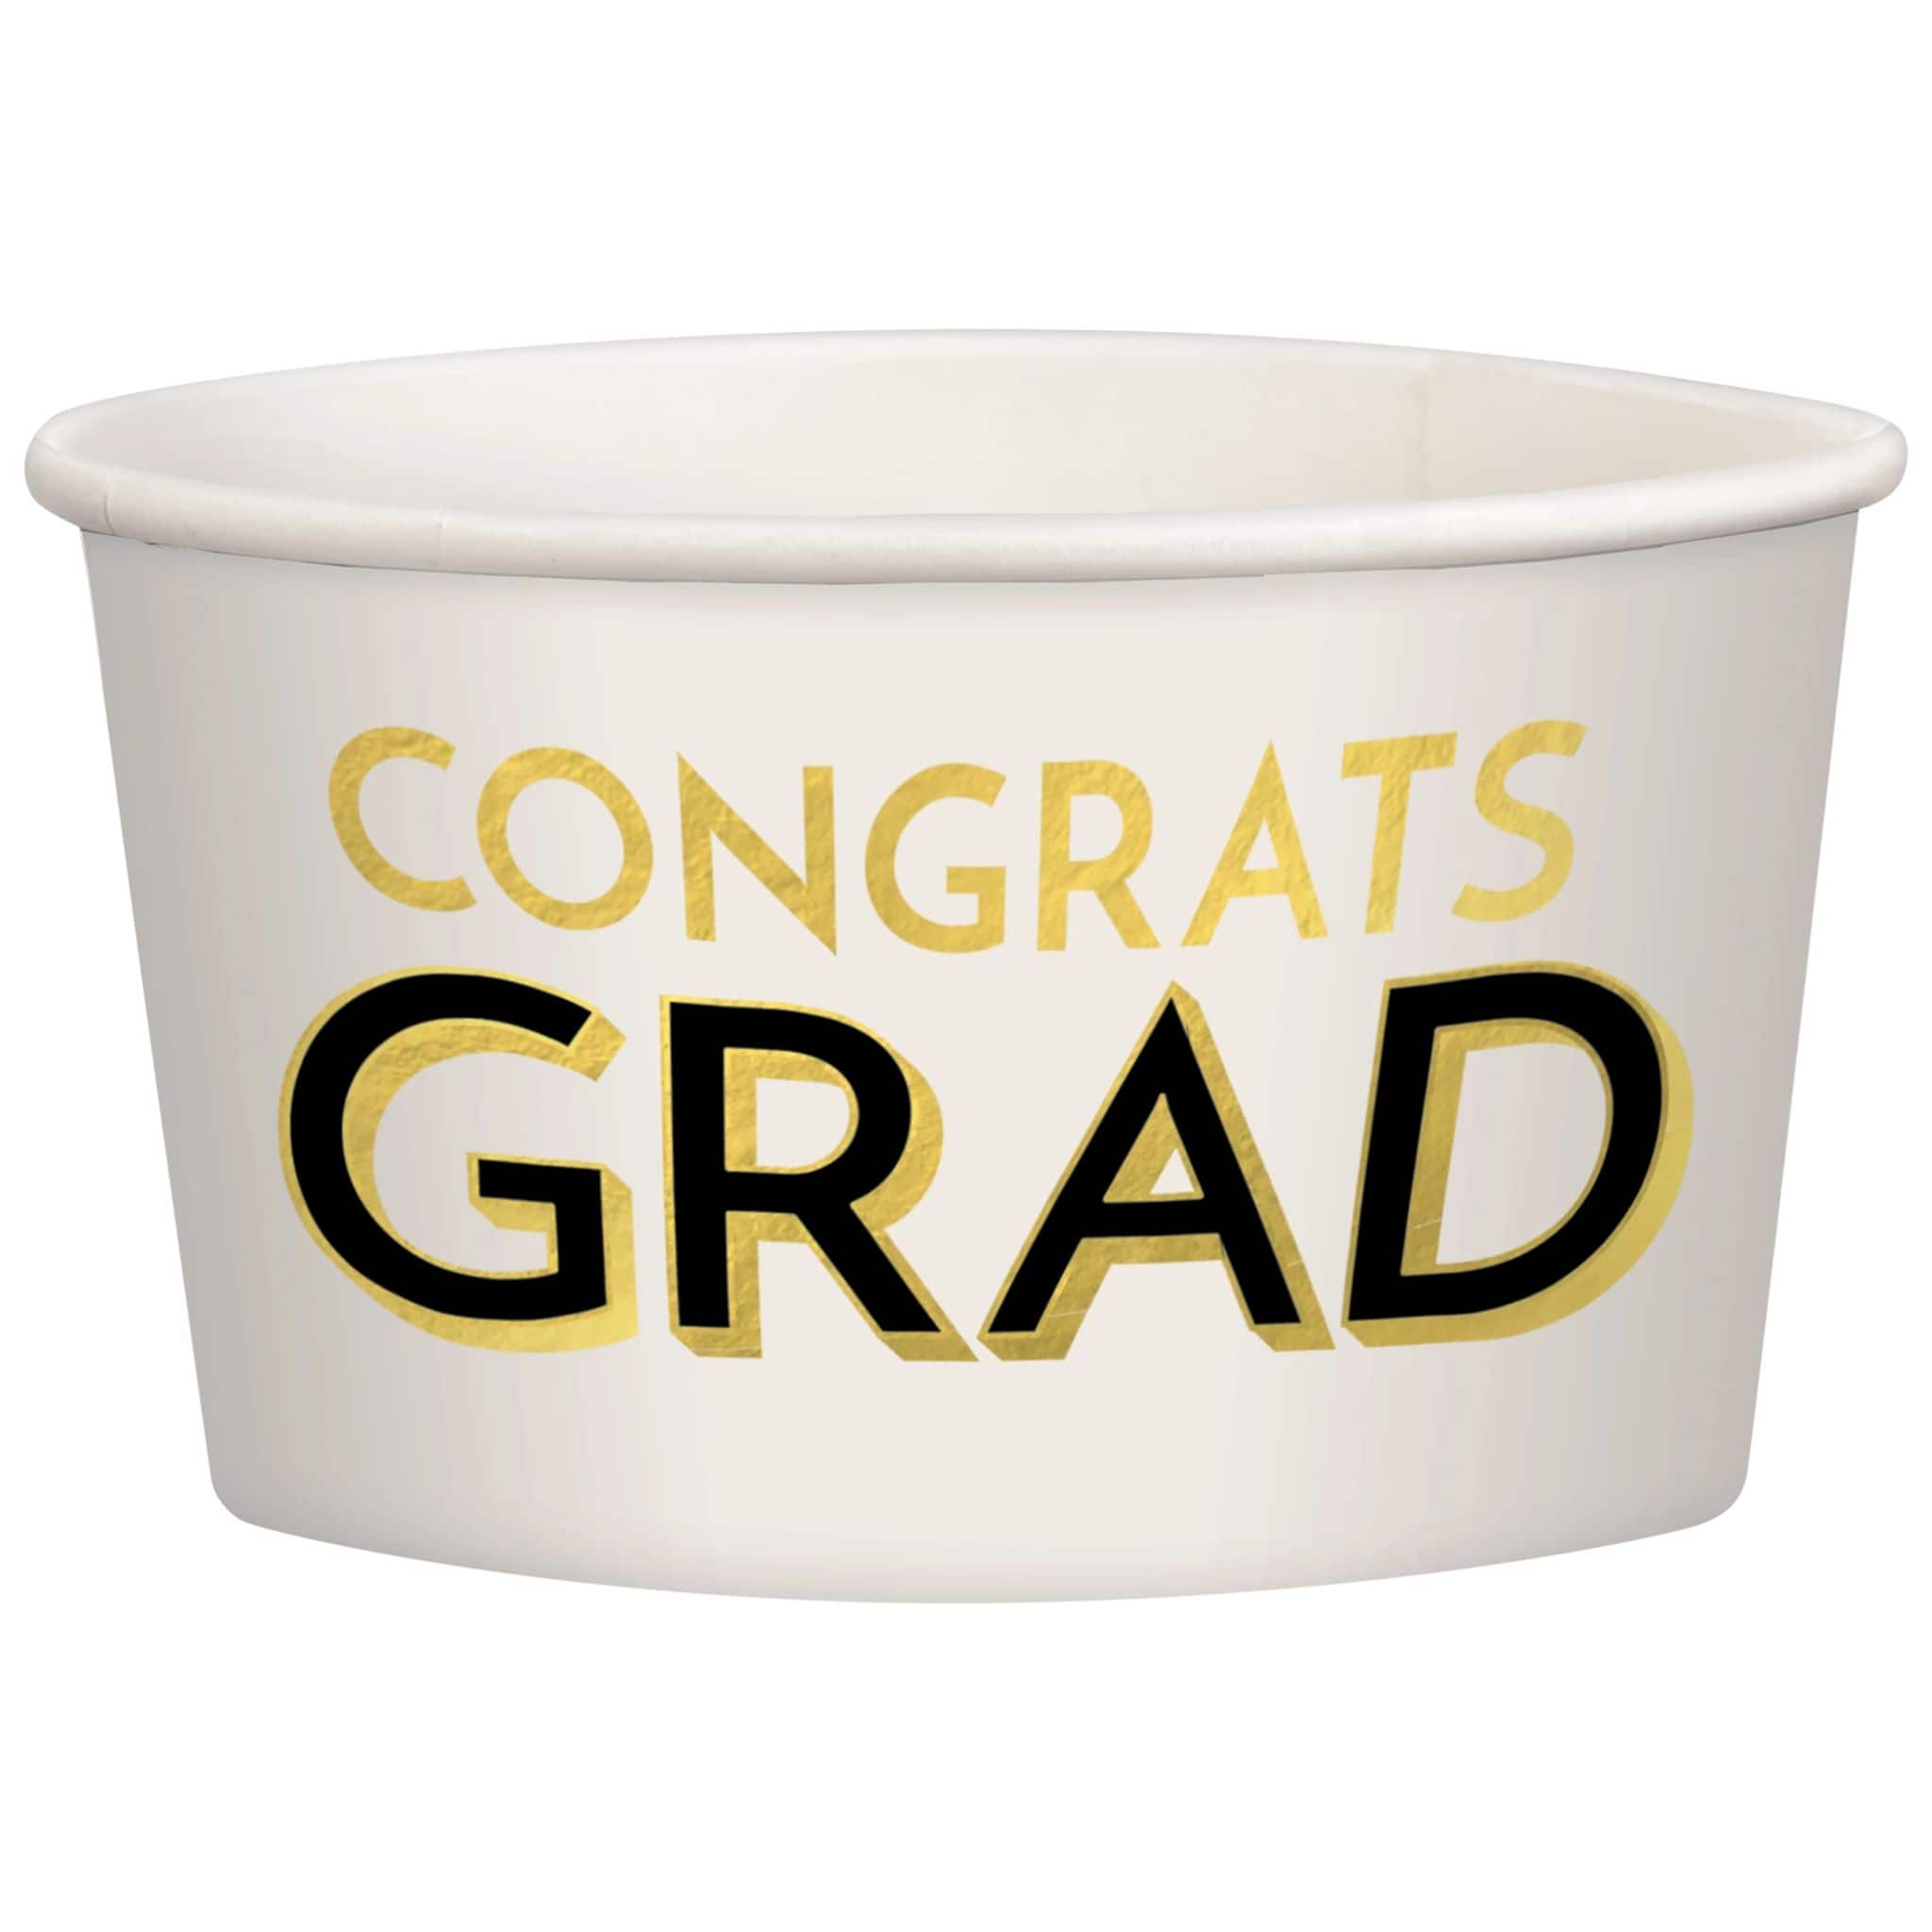 9.5oz. Congrats Grad Paper Treat Cups, 32ct.